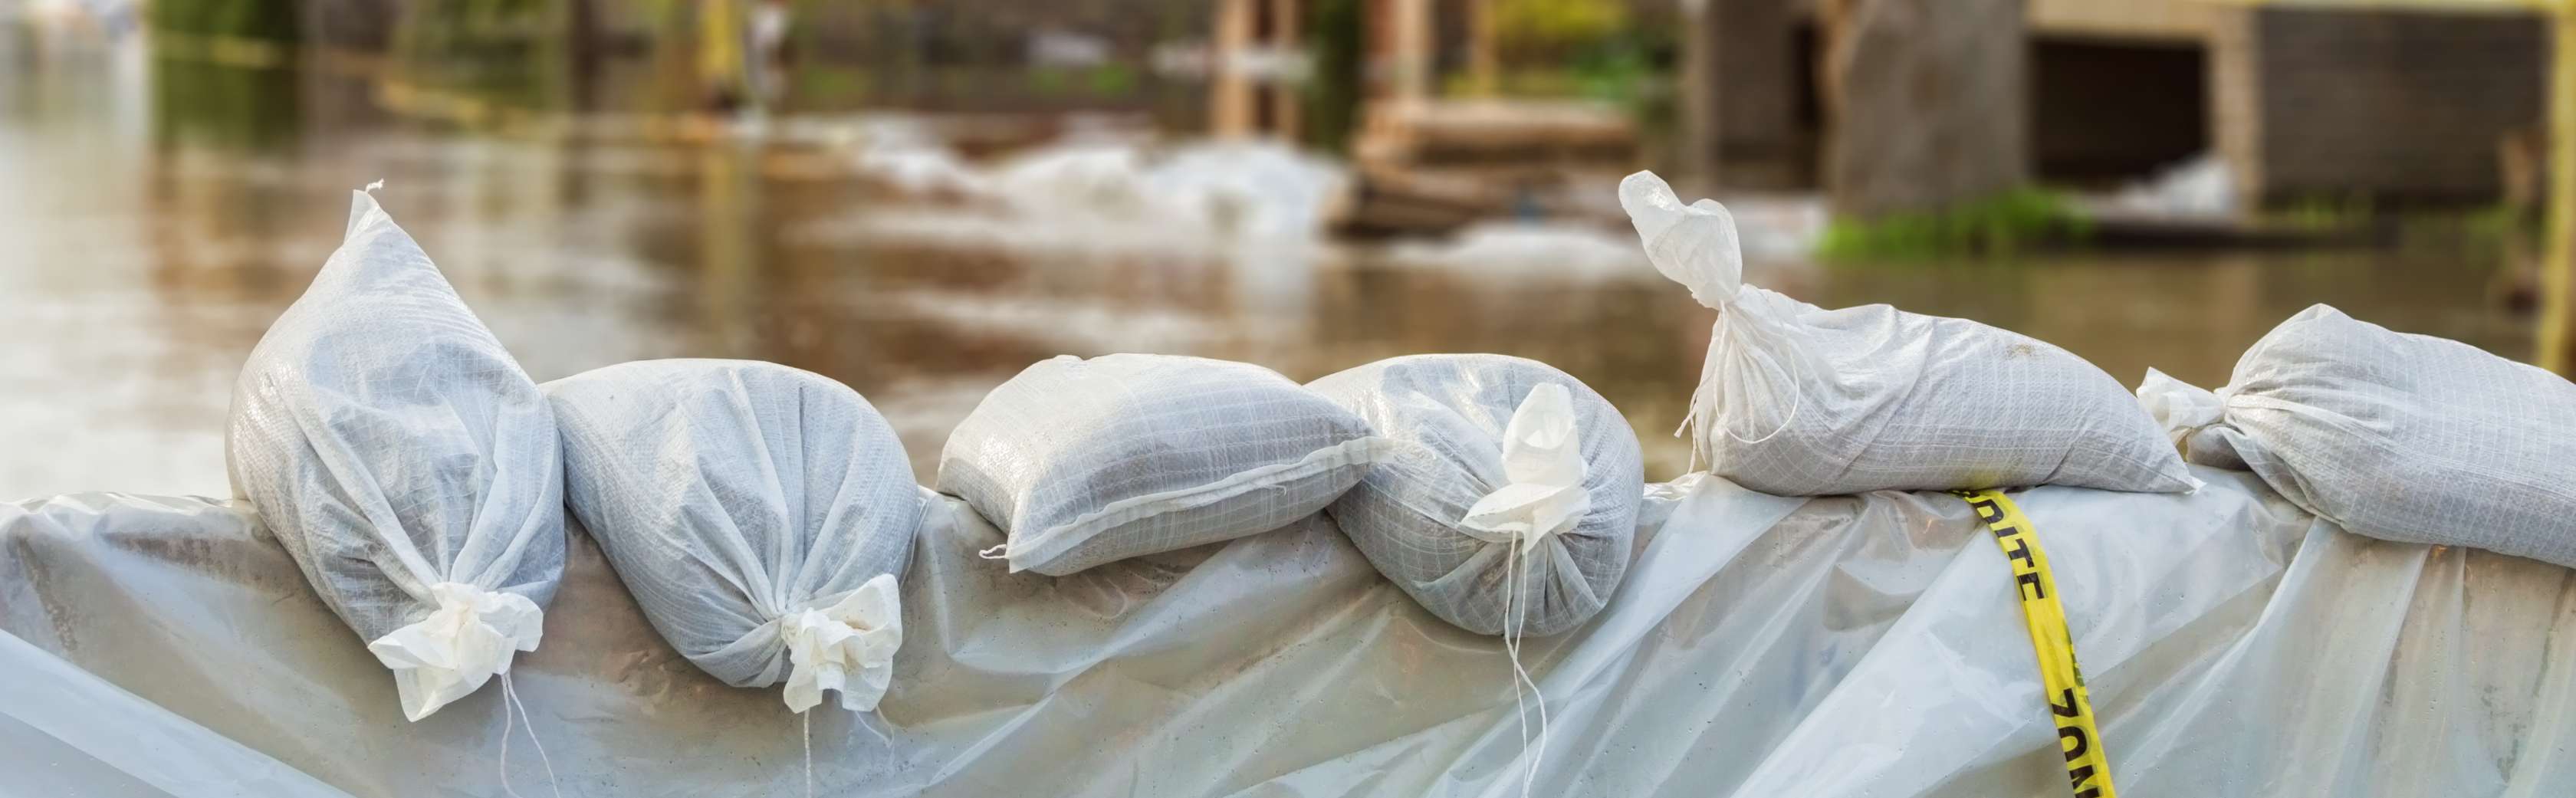 Sandsäcke auf der Straße schützen Häuser vor Überschwemmung